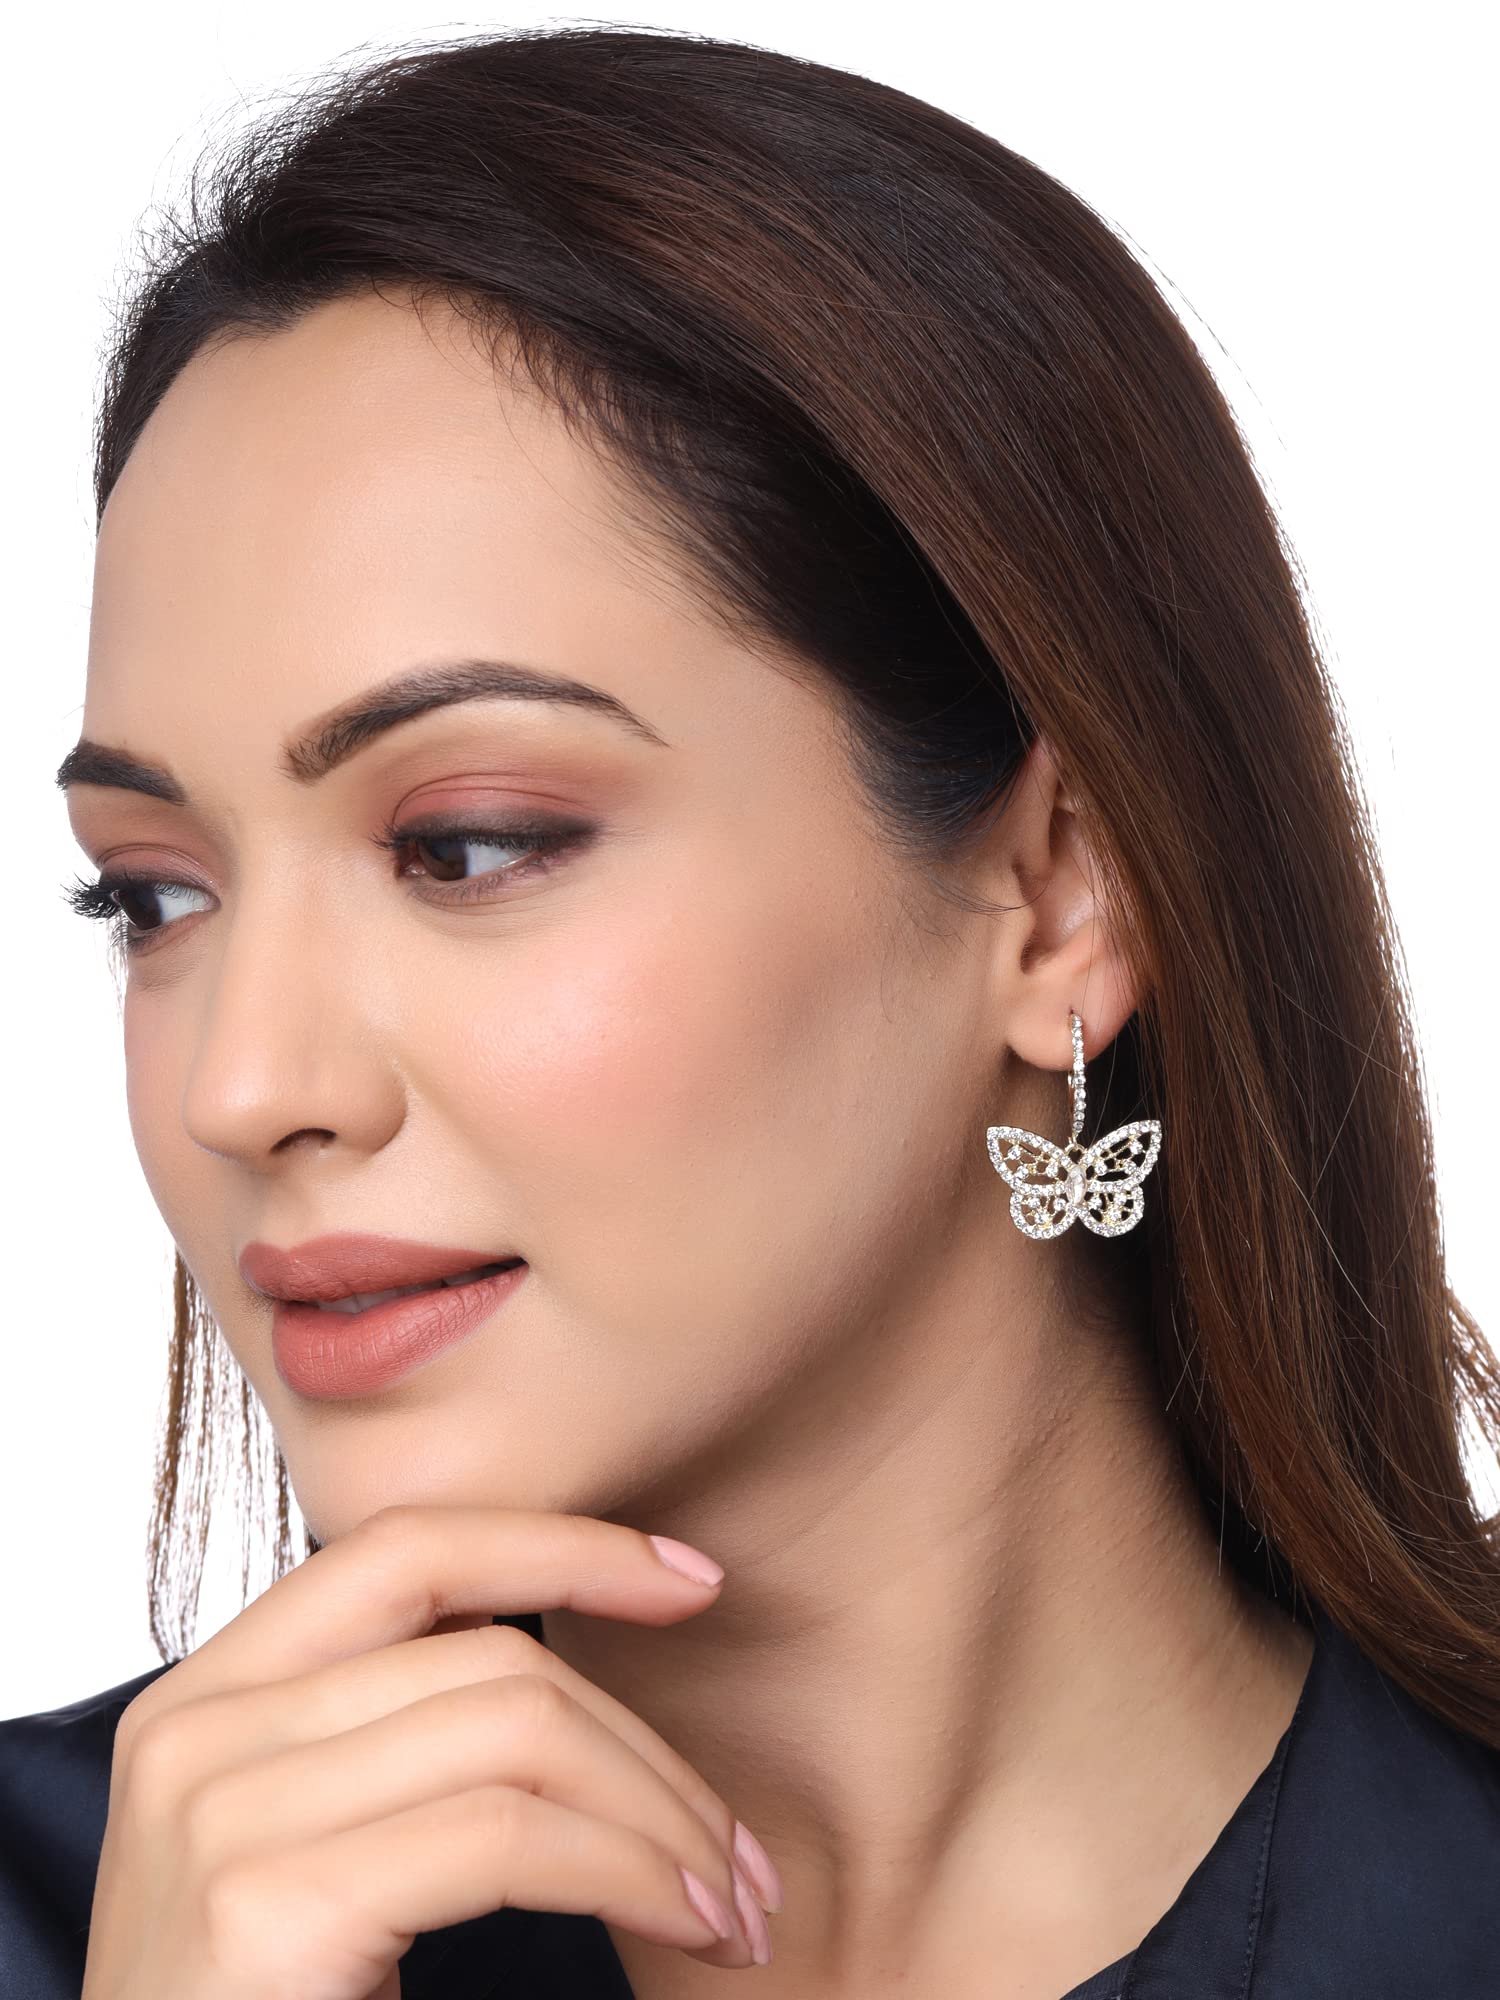 Buy SMALL HOOP EARRINGS Women Hoop Earring Women Gold Jewelry Earlobe  Earrings Gold Vermeil Hoop Earring for Girls Online in India - Etsy